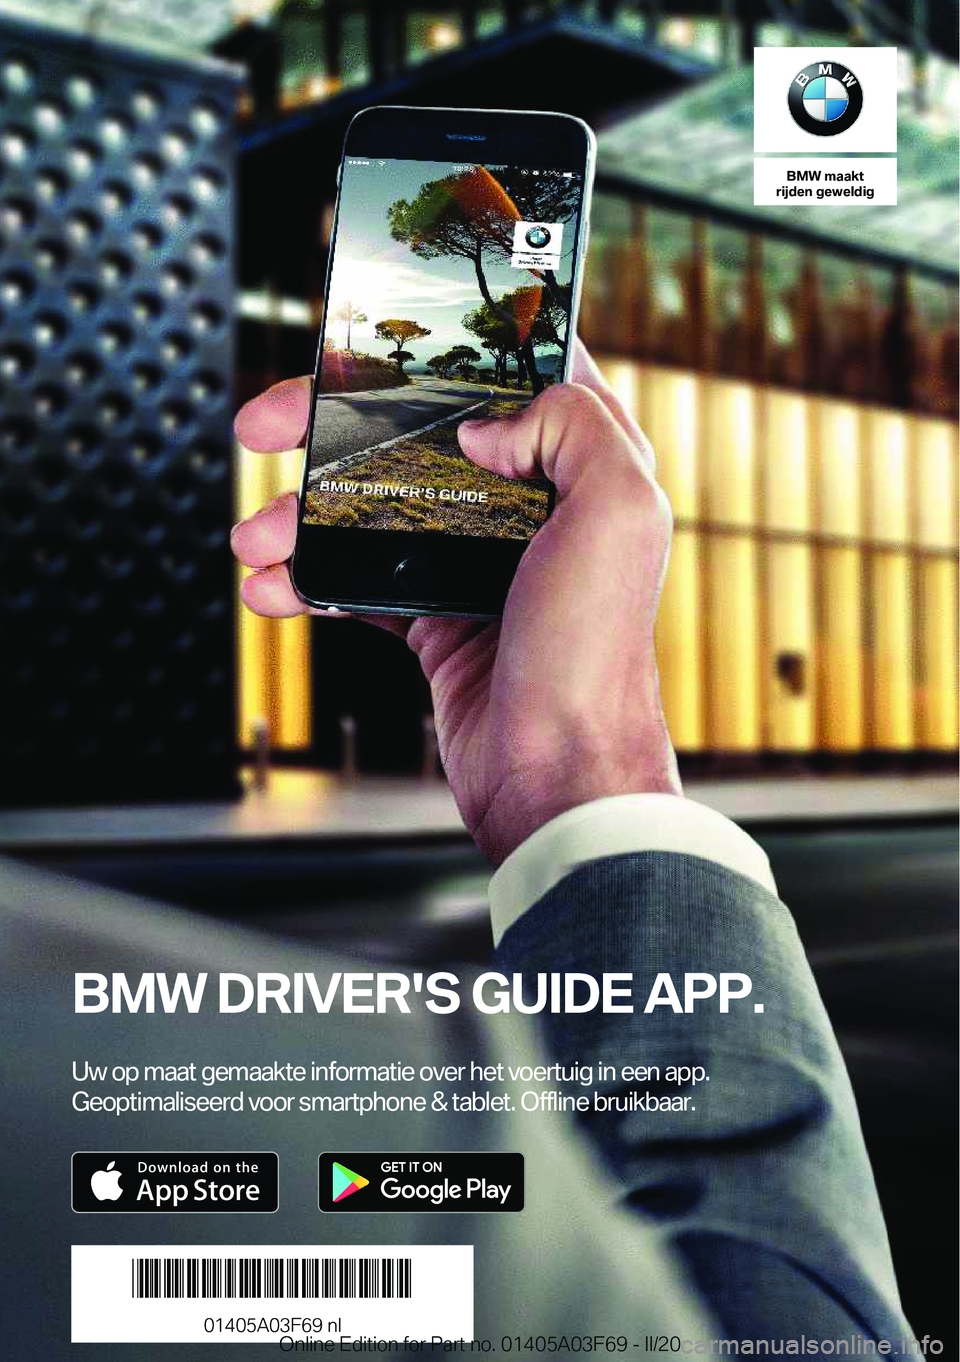 BMW 3 SERIES 2020  Instructieboekjes (in Dutch) �B�M�W��m�a�a�k�t
�r�i�j�d�e�n��g�e�w�e�l�d�i�g
�B�M�W��D�R�I�V�E�R�'�S��G�U�I�D�E��A�P�P�.
�U�w��o�p��m�a�a�t��g�e�m�a�a�k�t�e��i�n�f�o�r�m�a�t�i�e��o�v�e�r��h�e�t��v�o�e�r�t�u�i�g��